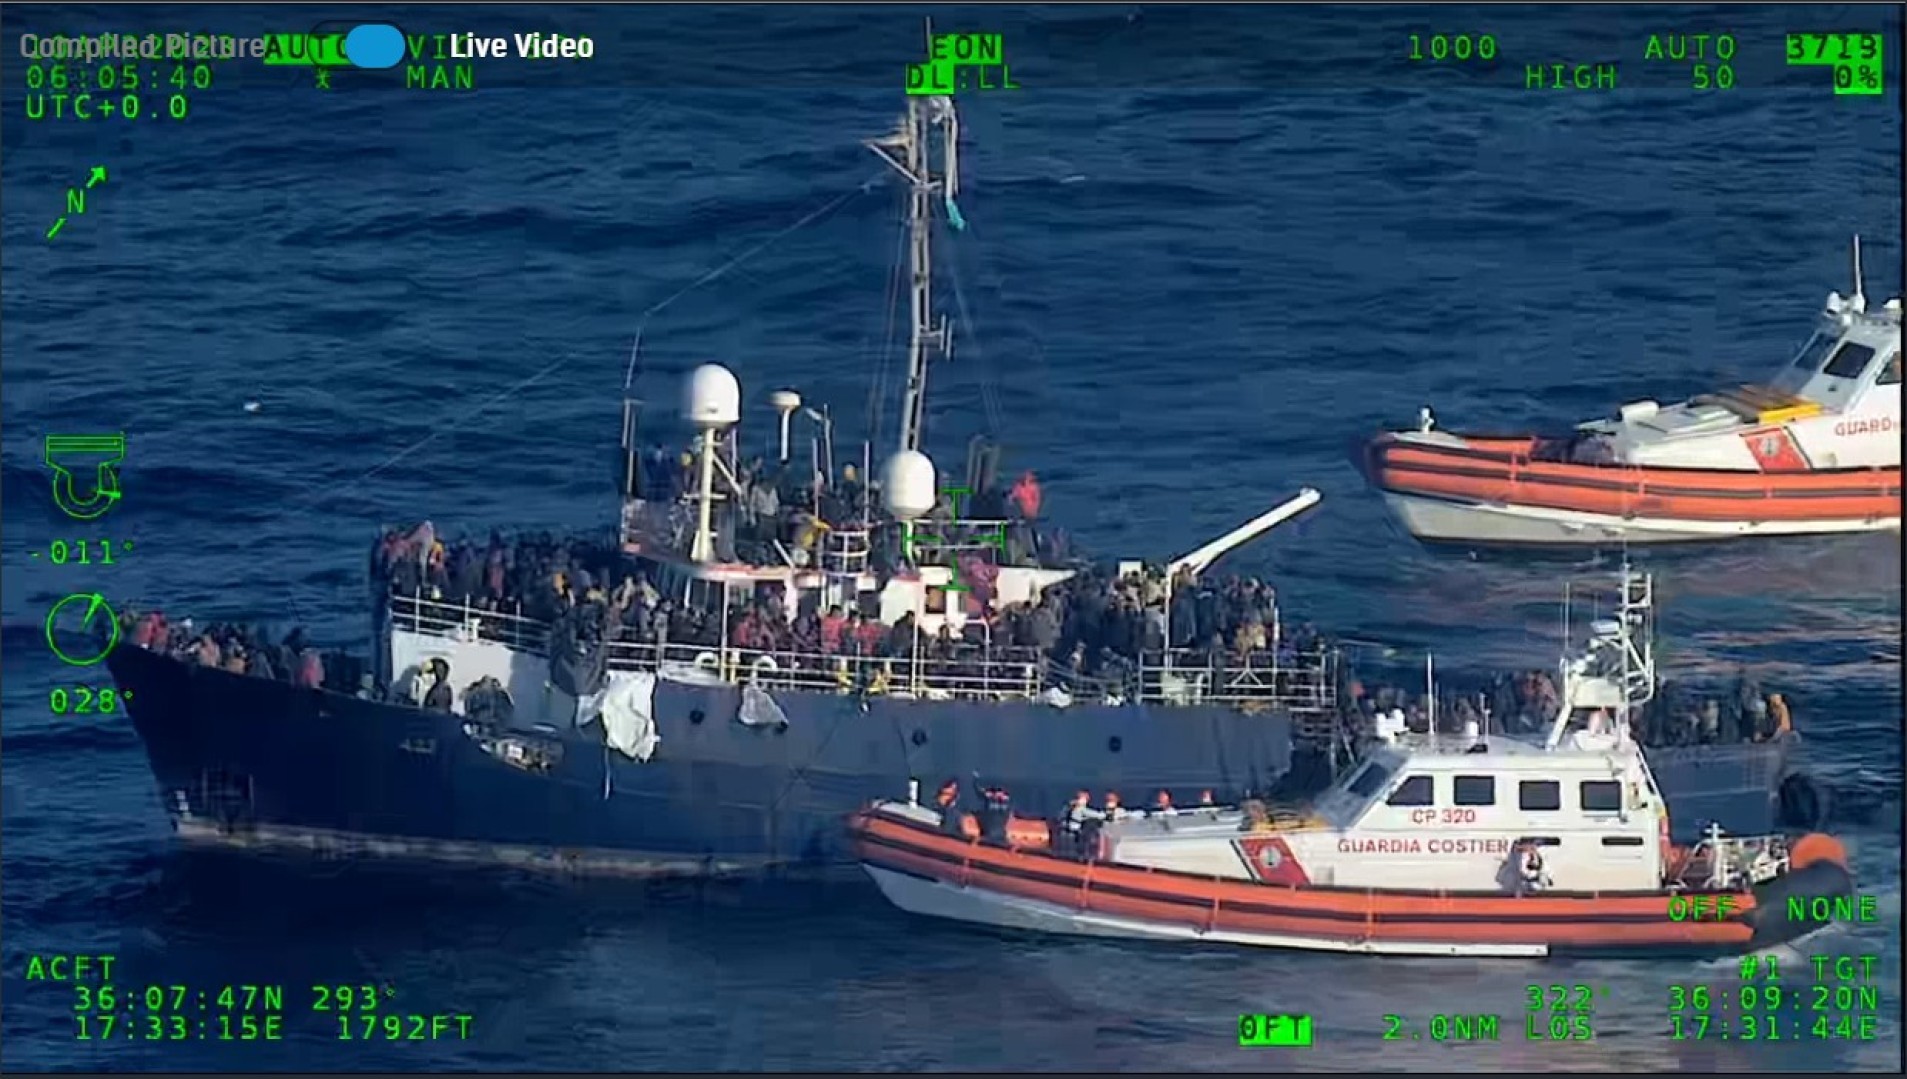 Operazioni di soccorso della Guardia Costiera: due barconi in difficoltà